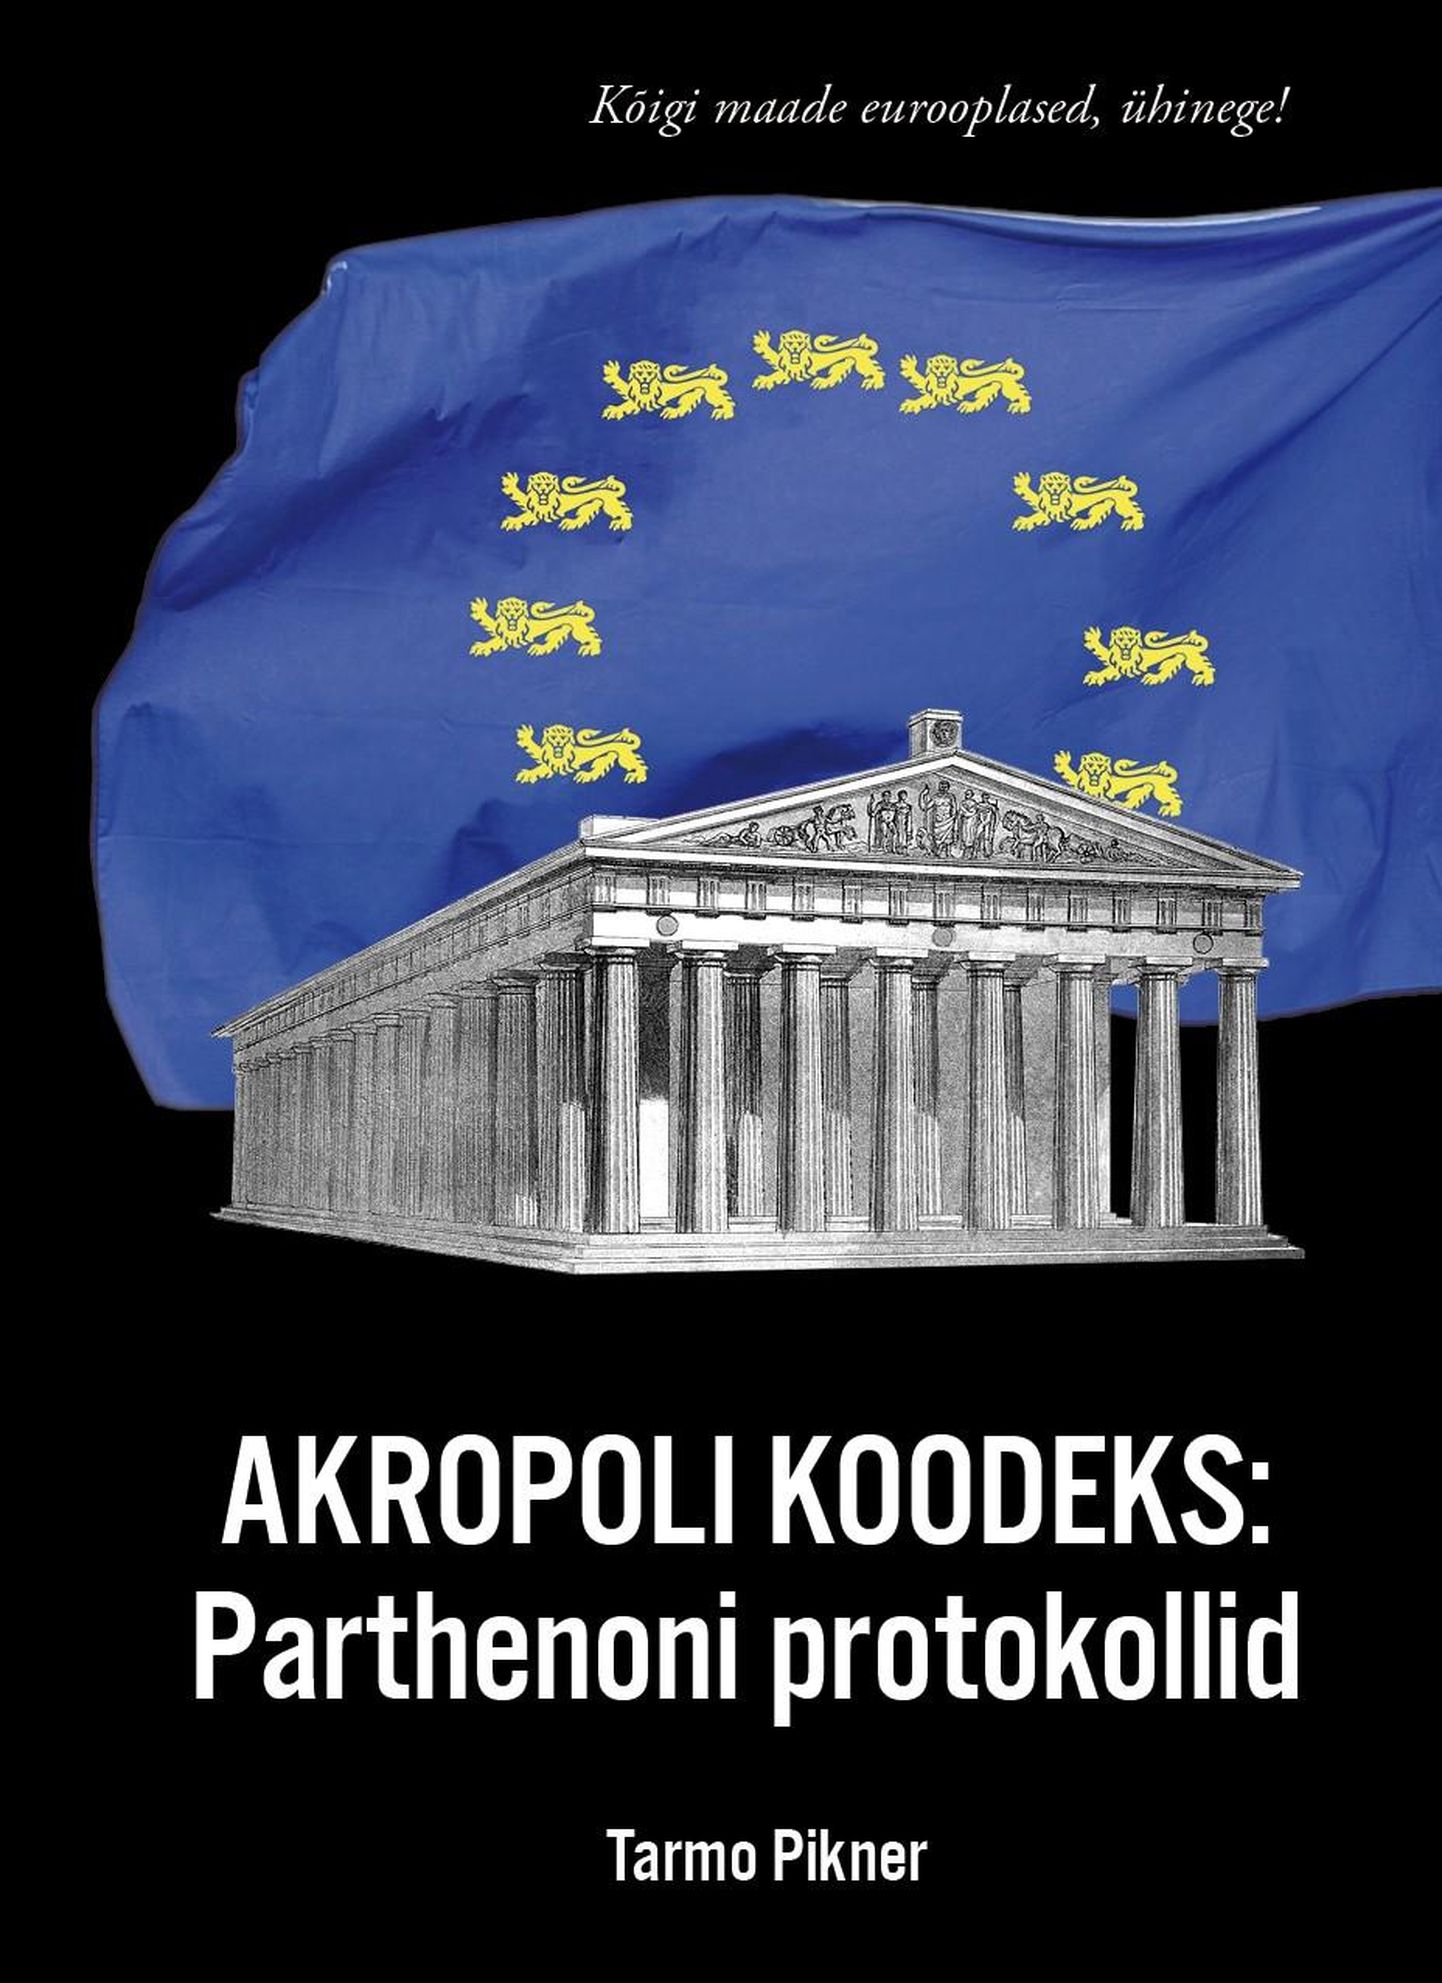 "Akropoli koodeks: Parthenoni protokollid"